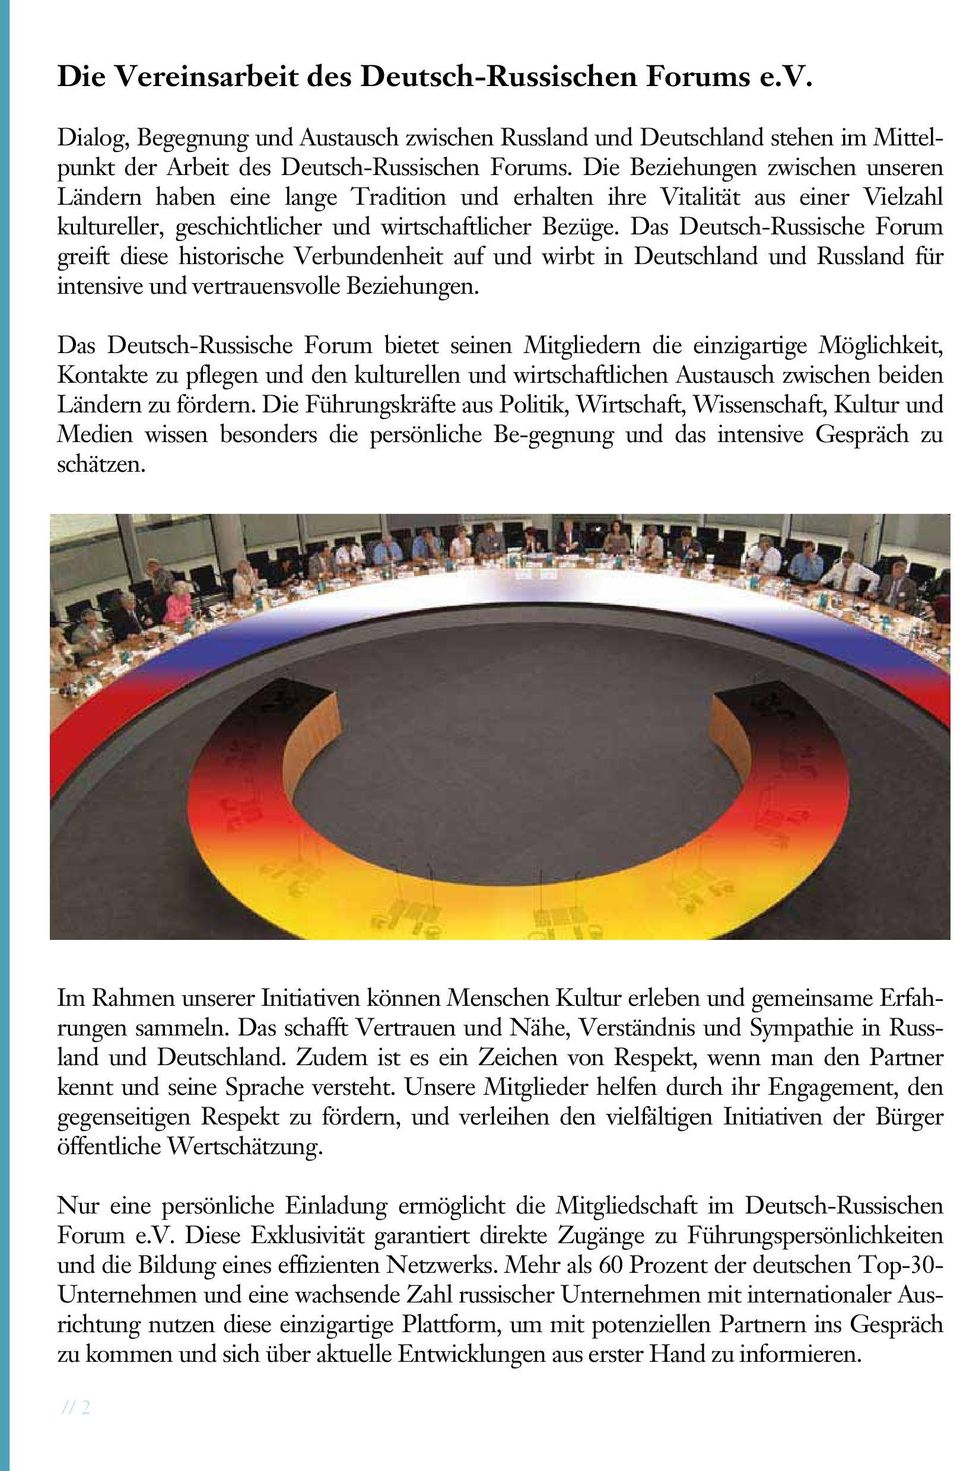 Das Deutsch-Russische Forum greift diese historische Verbundenheit auf und wirbt in Deutschland und Russland für intensive und vertrauensvolle Beziehungen.